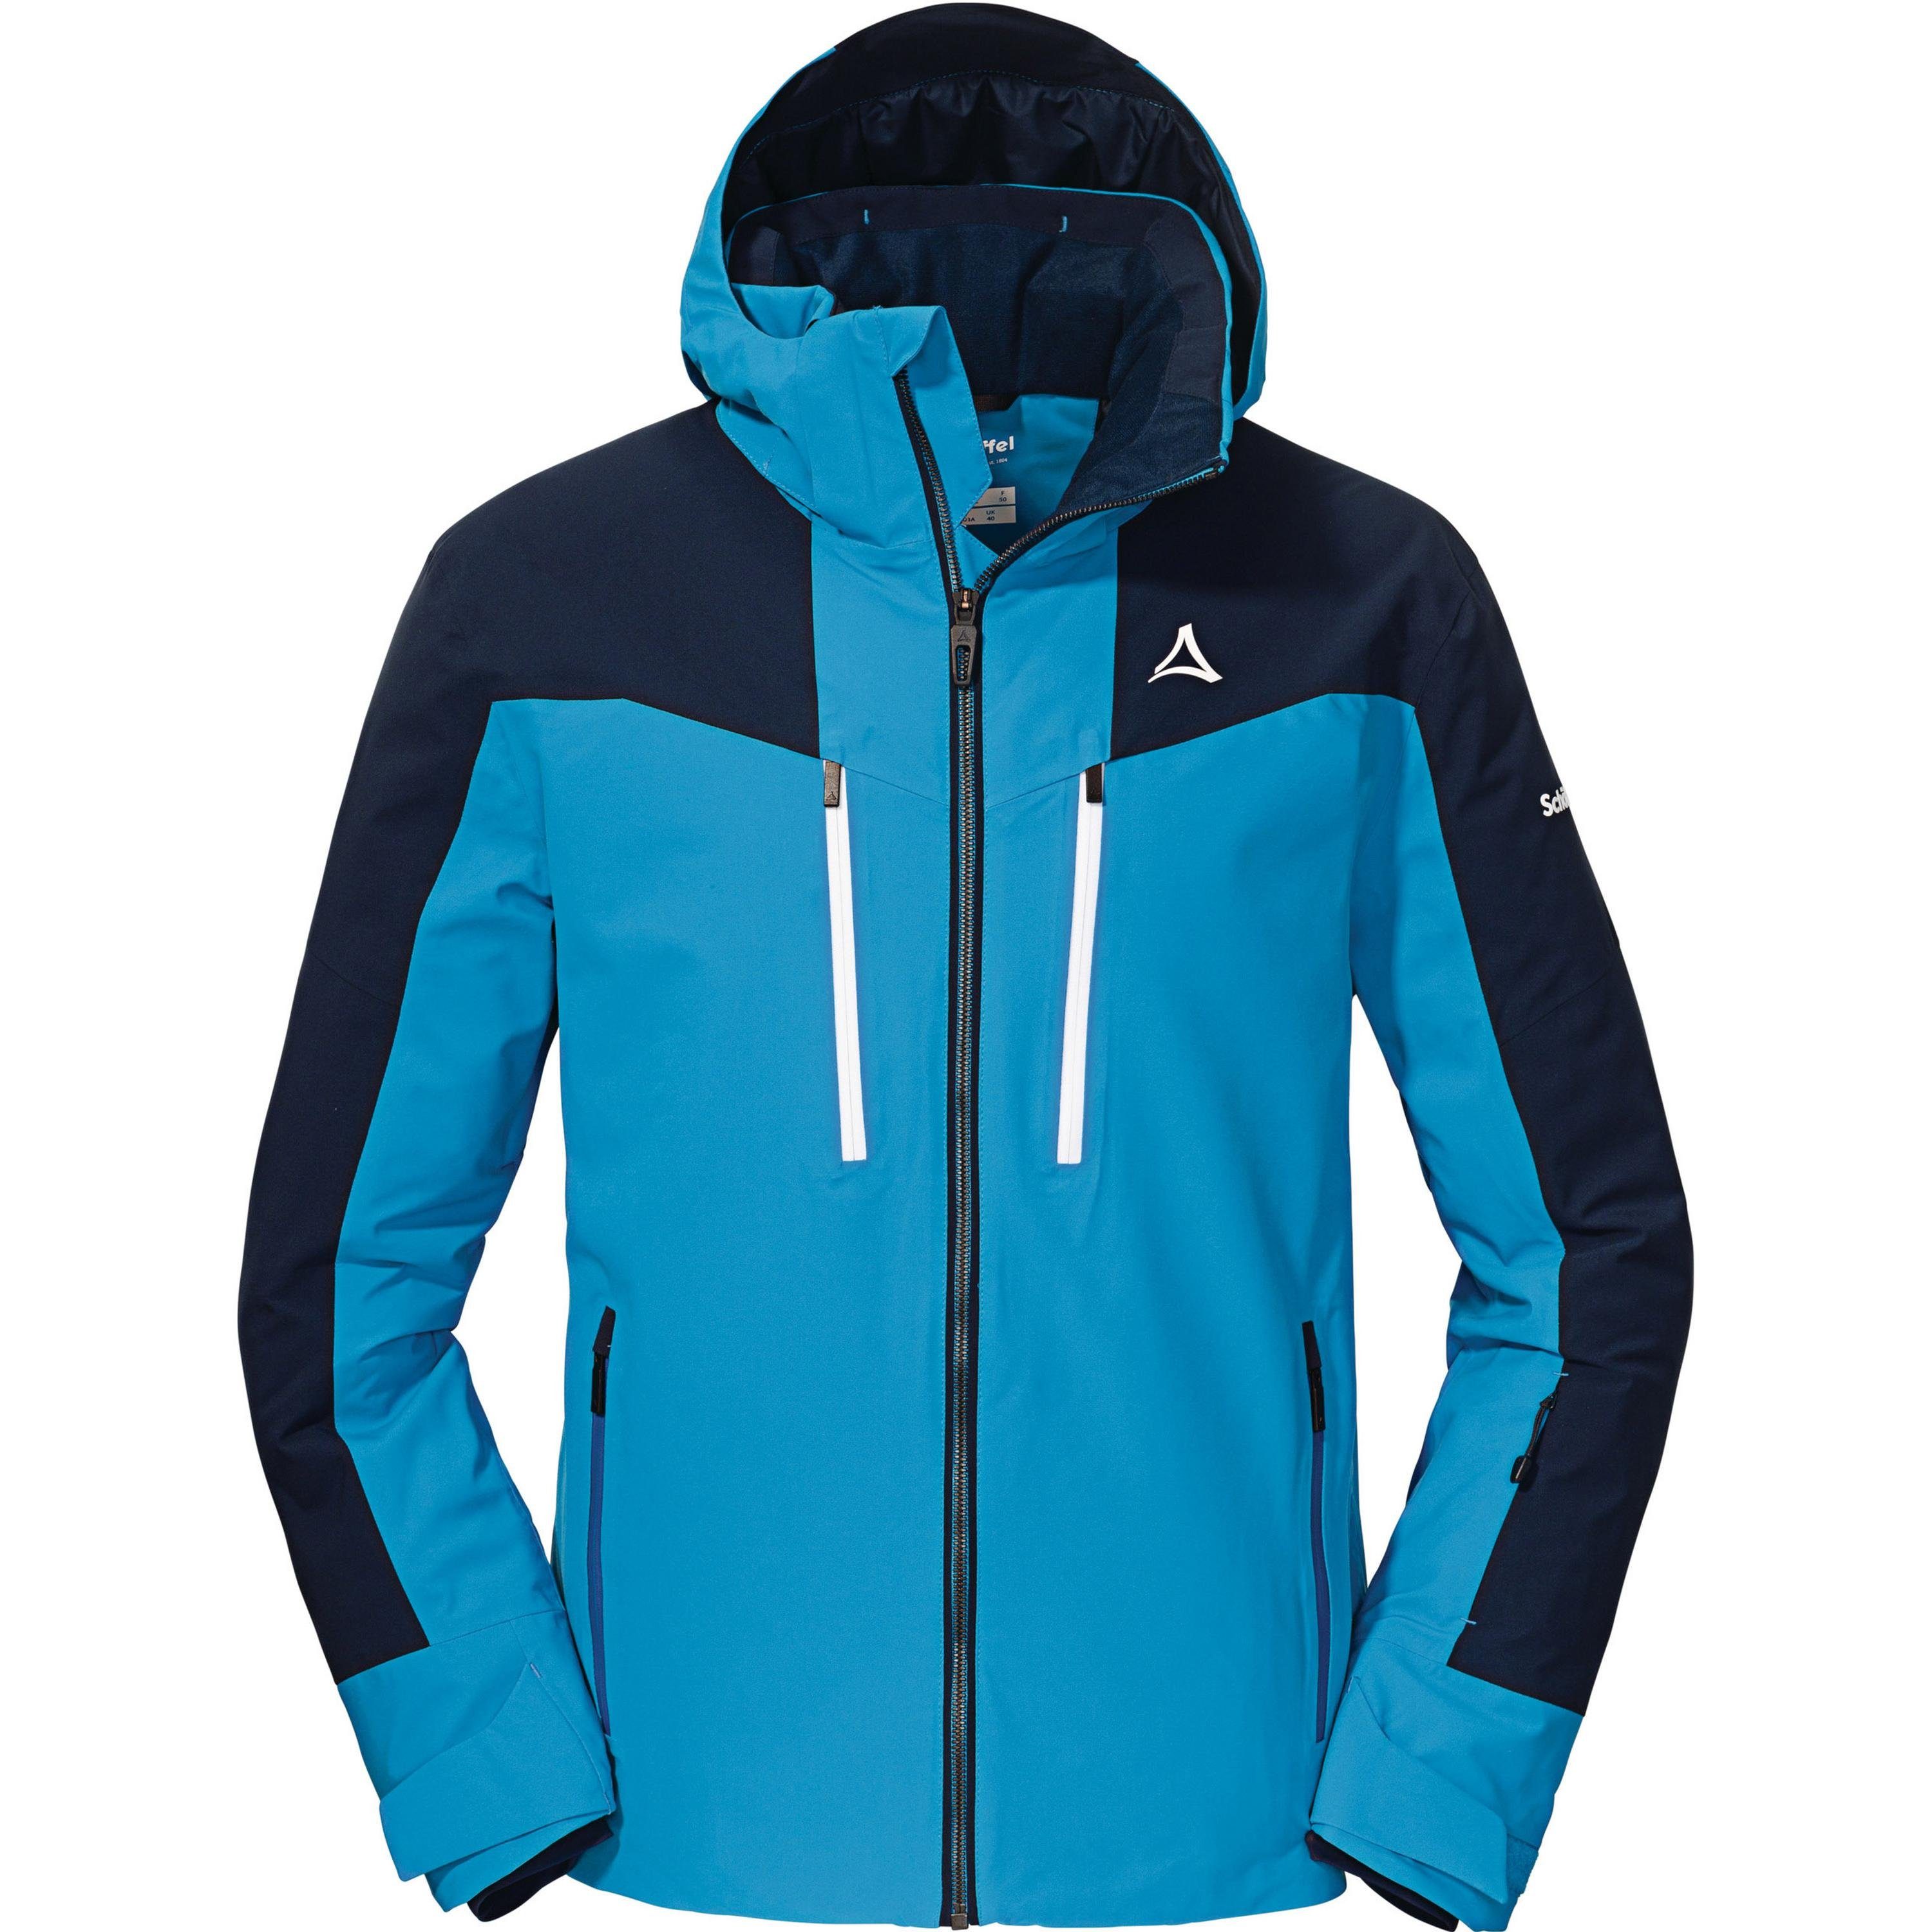 Schoeffel Anorak Ski Jacket Tanunalpe M online kaufen | OTTO